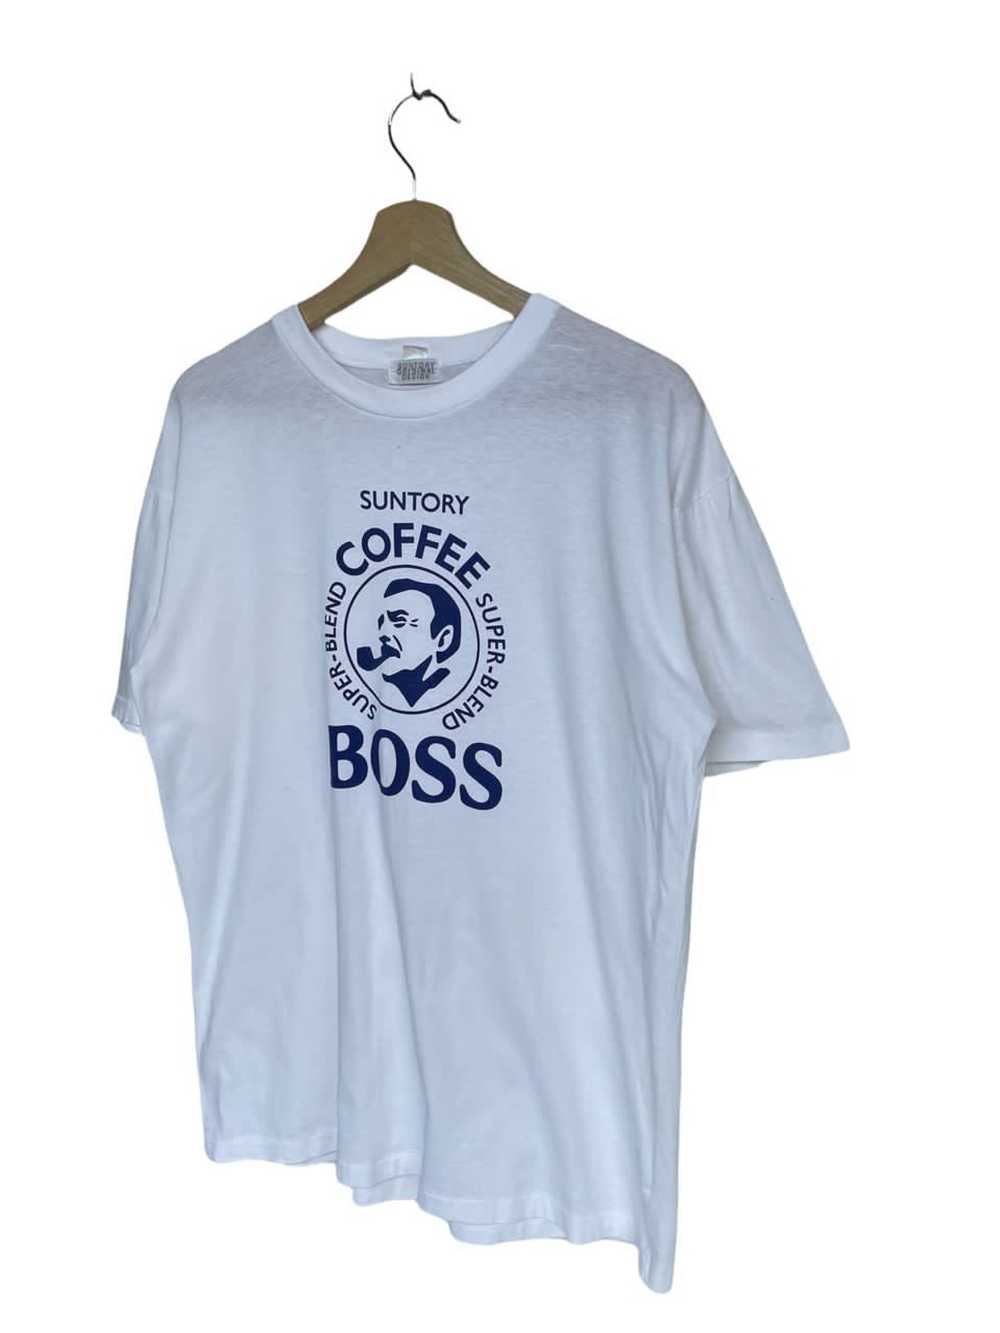 Brand × Very Rare Very Rare Suntory Boss Coffee S… - image 2